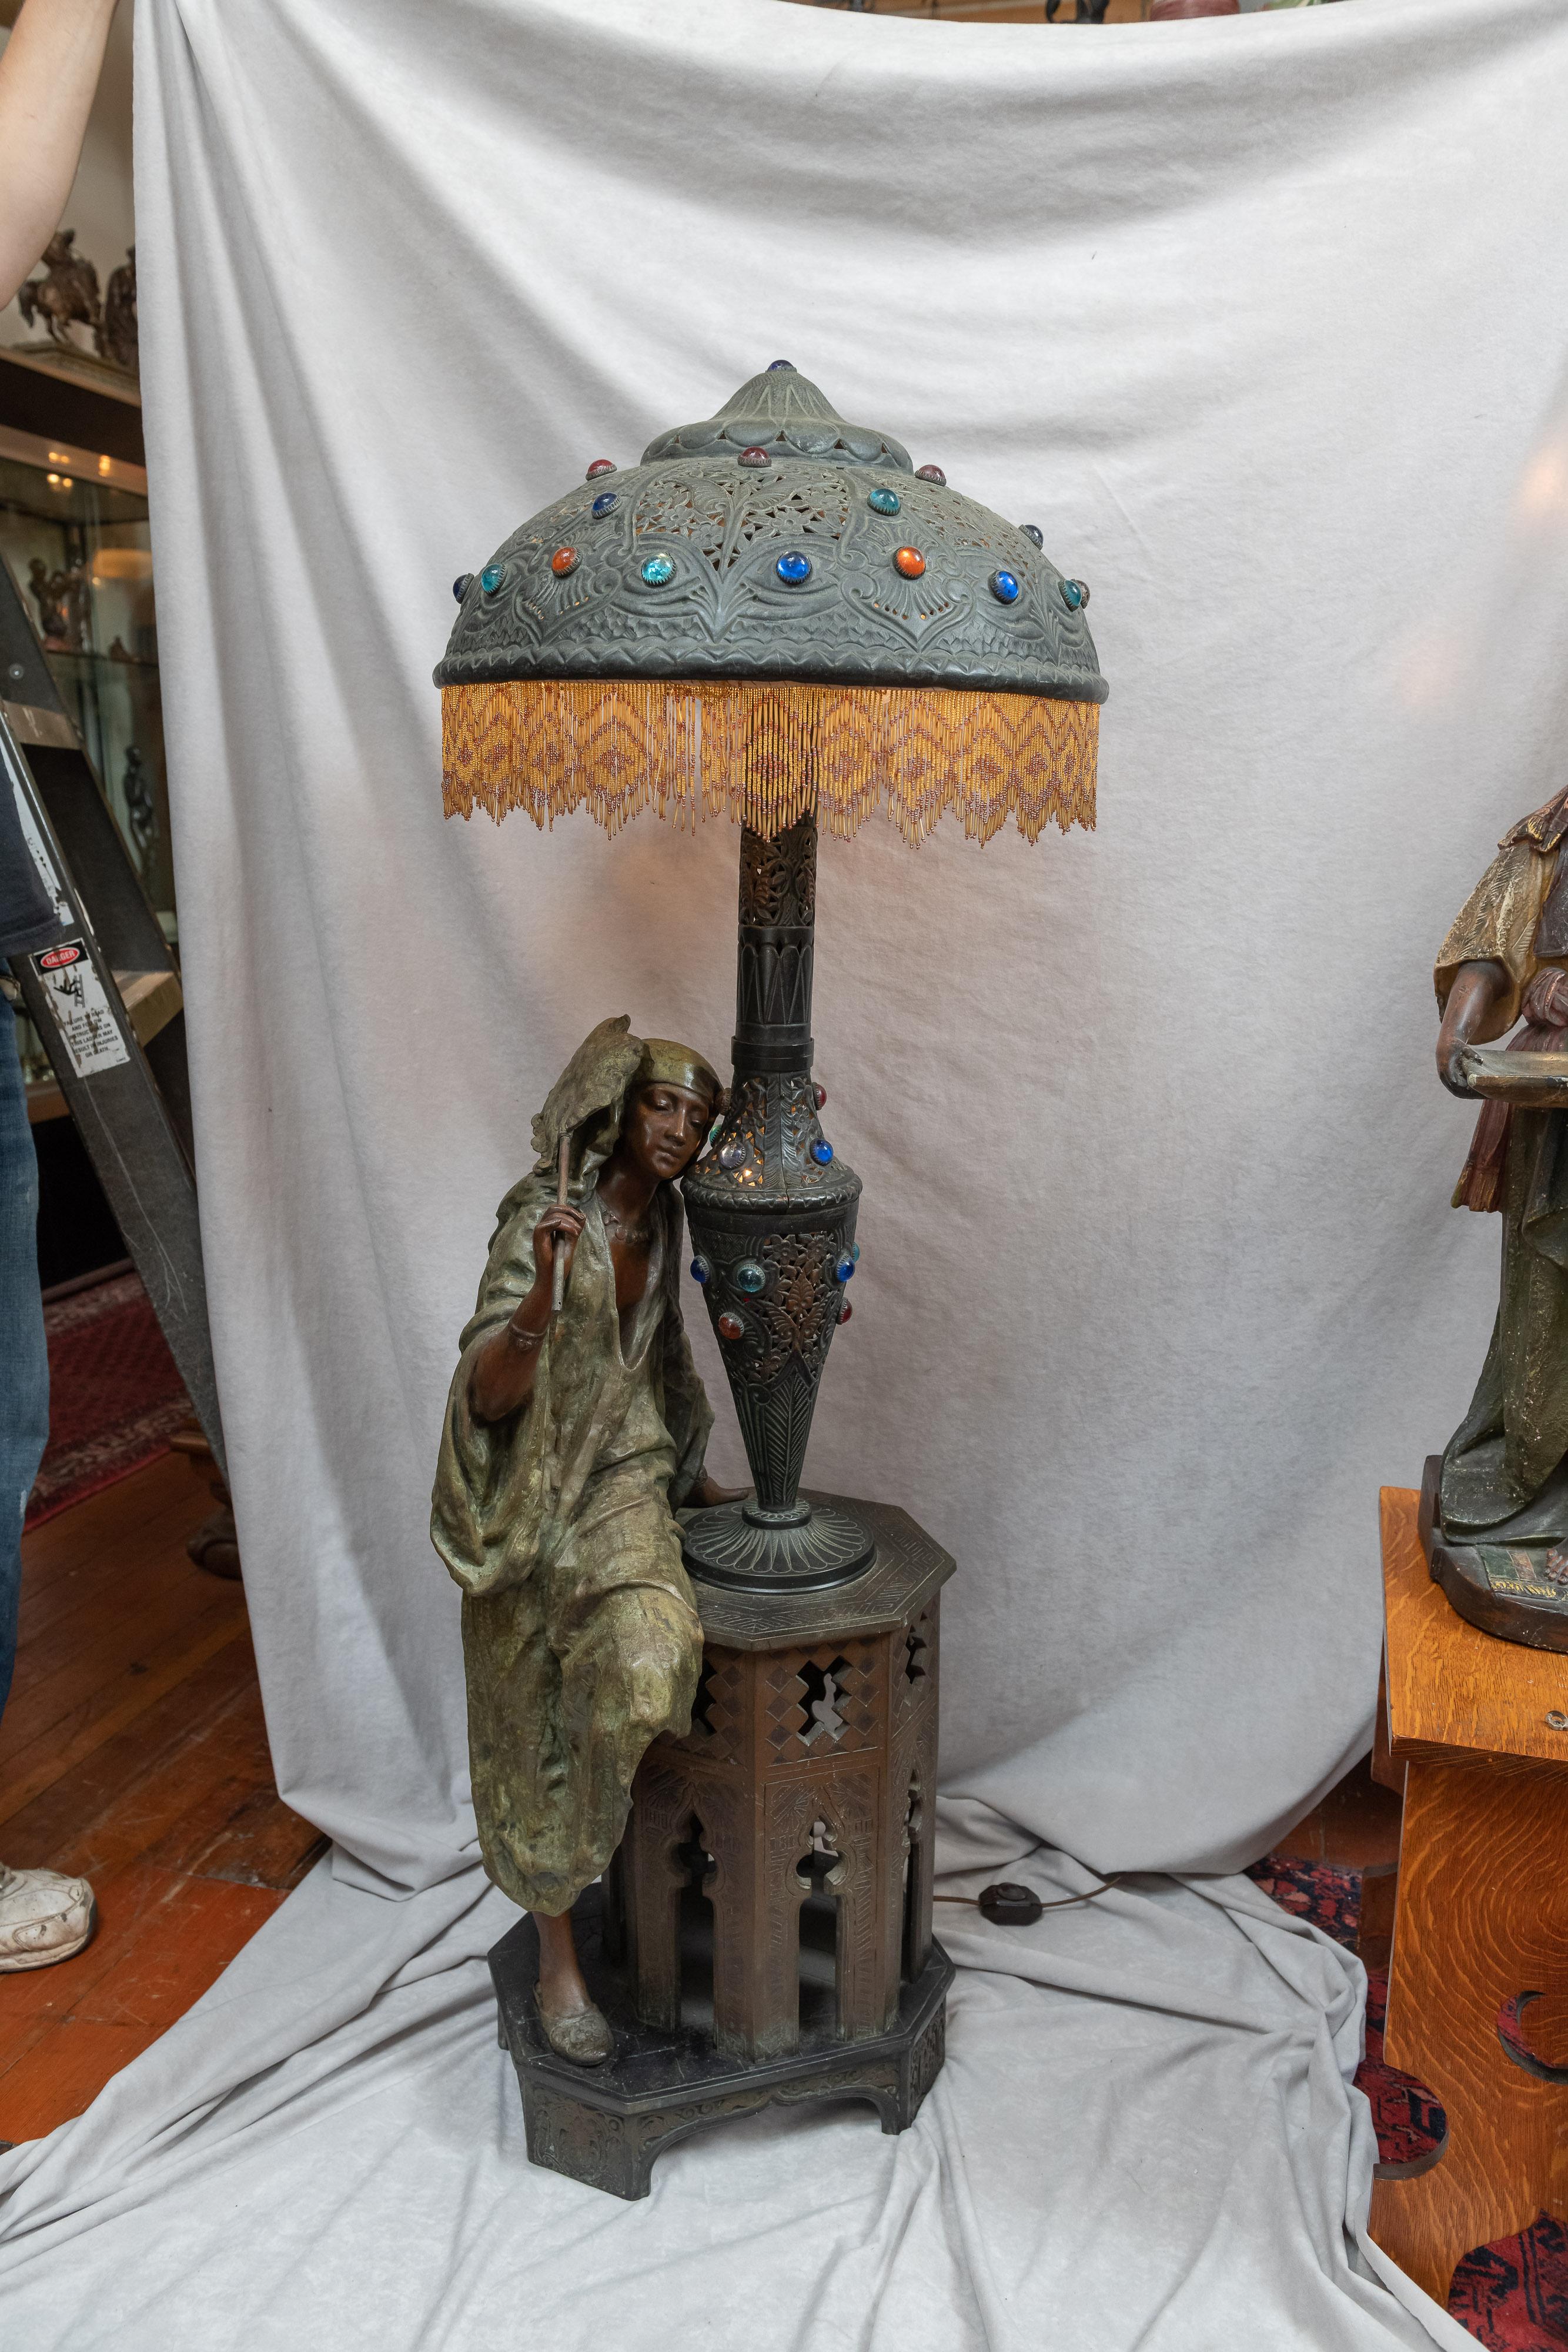 Moorish Huge Orientalist Theme Statue / Lamp w/Arab Woman Under a Brass Shade w/ Jewels